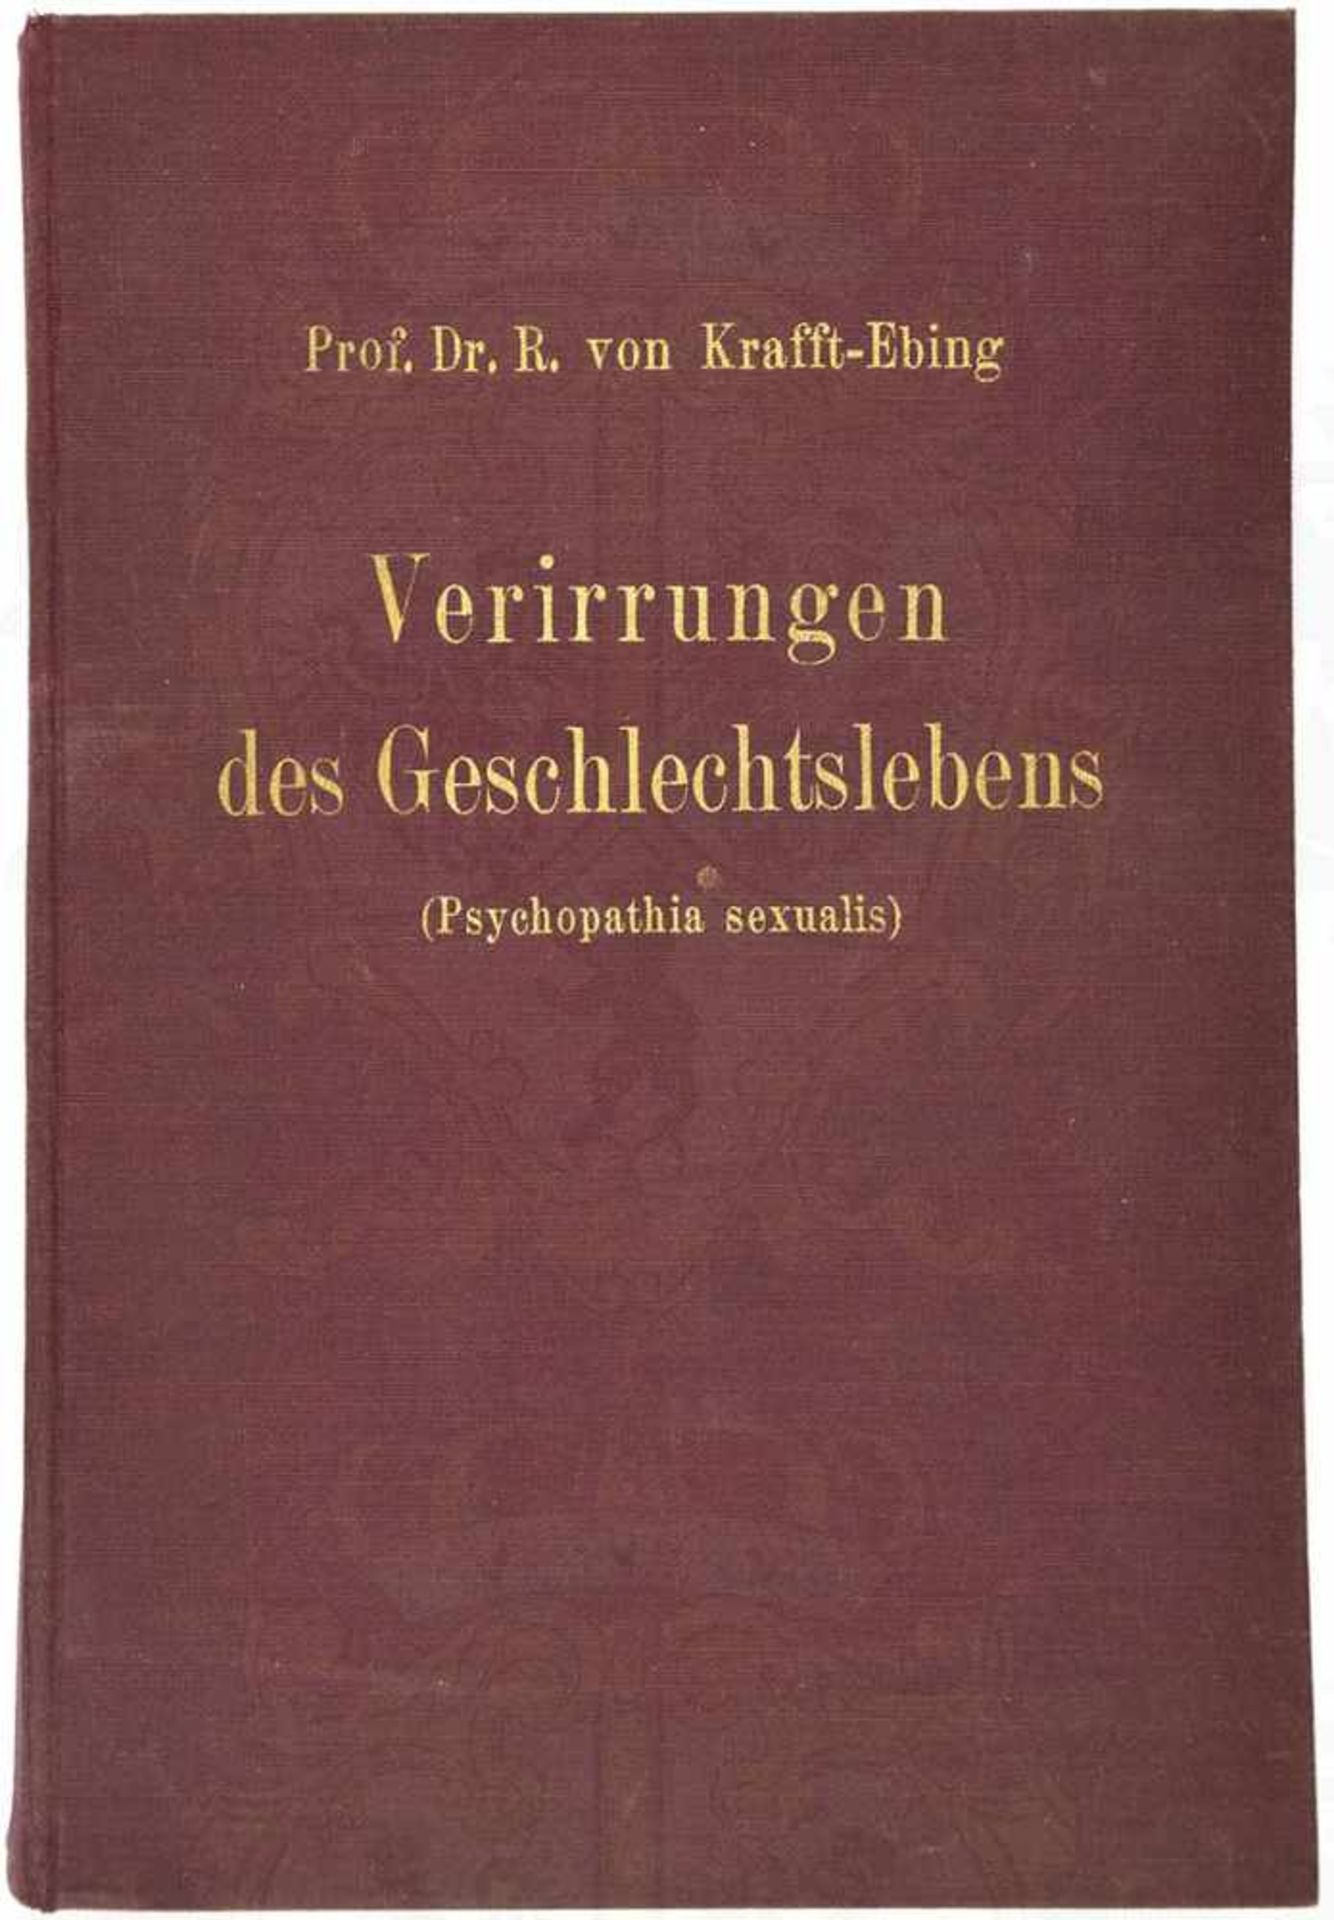 PSYCHOPATHIA SEXUALIS, „Verirrungen des Geschlechtslebens“, Prof. Dr. R. von Krafft-Ebing/Dr. med.